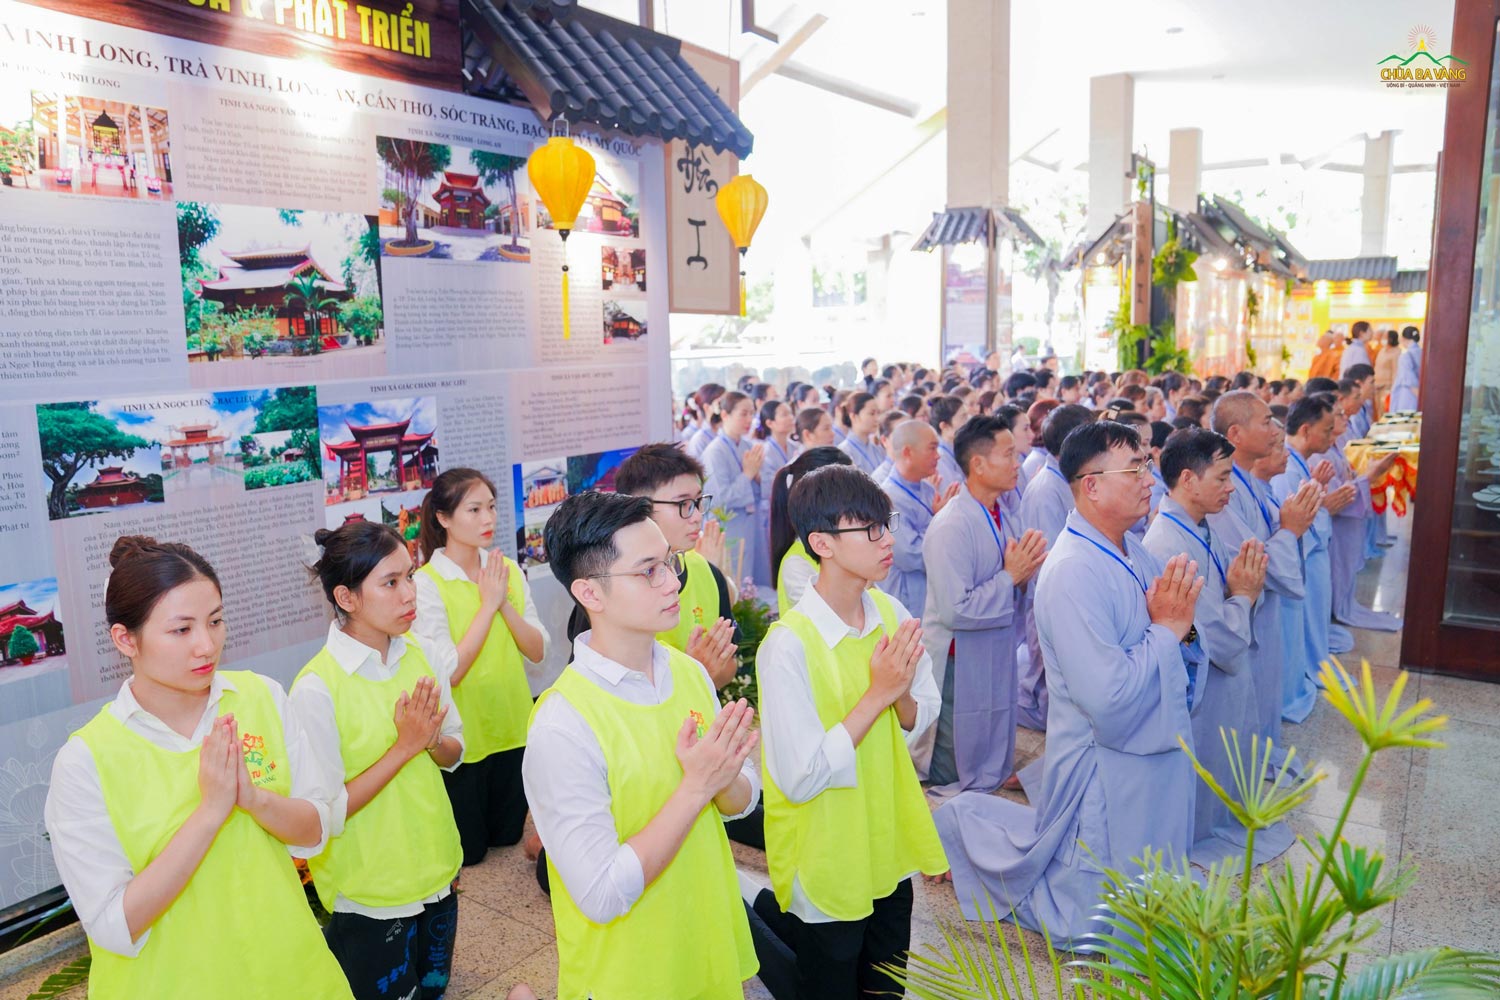 Phật tử CLB Cúc Vàng và các thành viên CLB Tuổi trẻ chùa Ba Vàng khu vực miền Nam tham dự chương trình